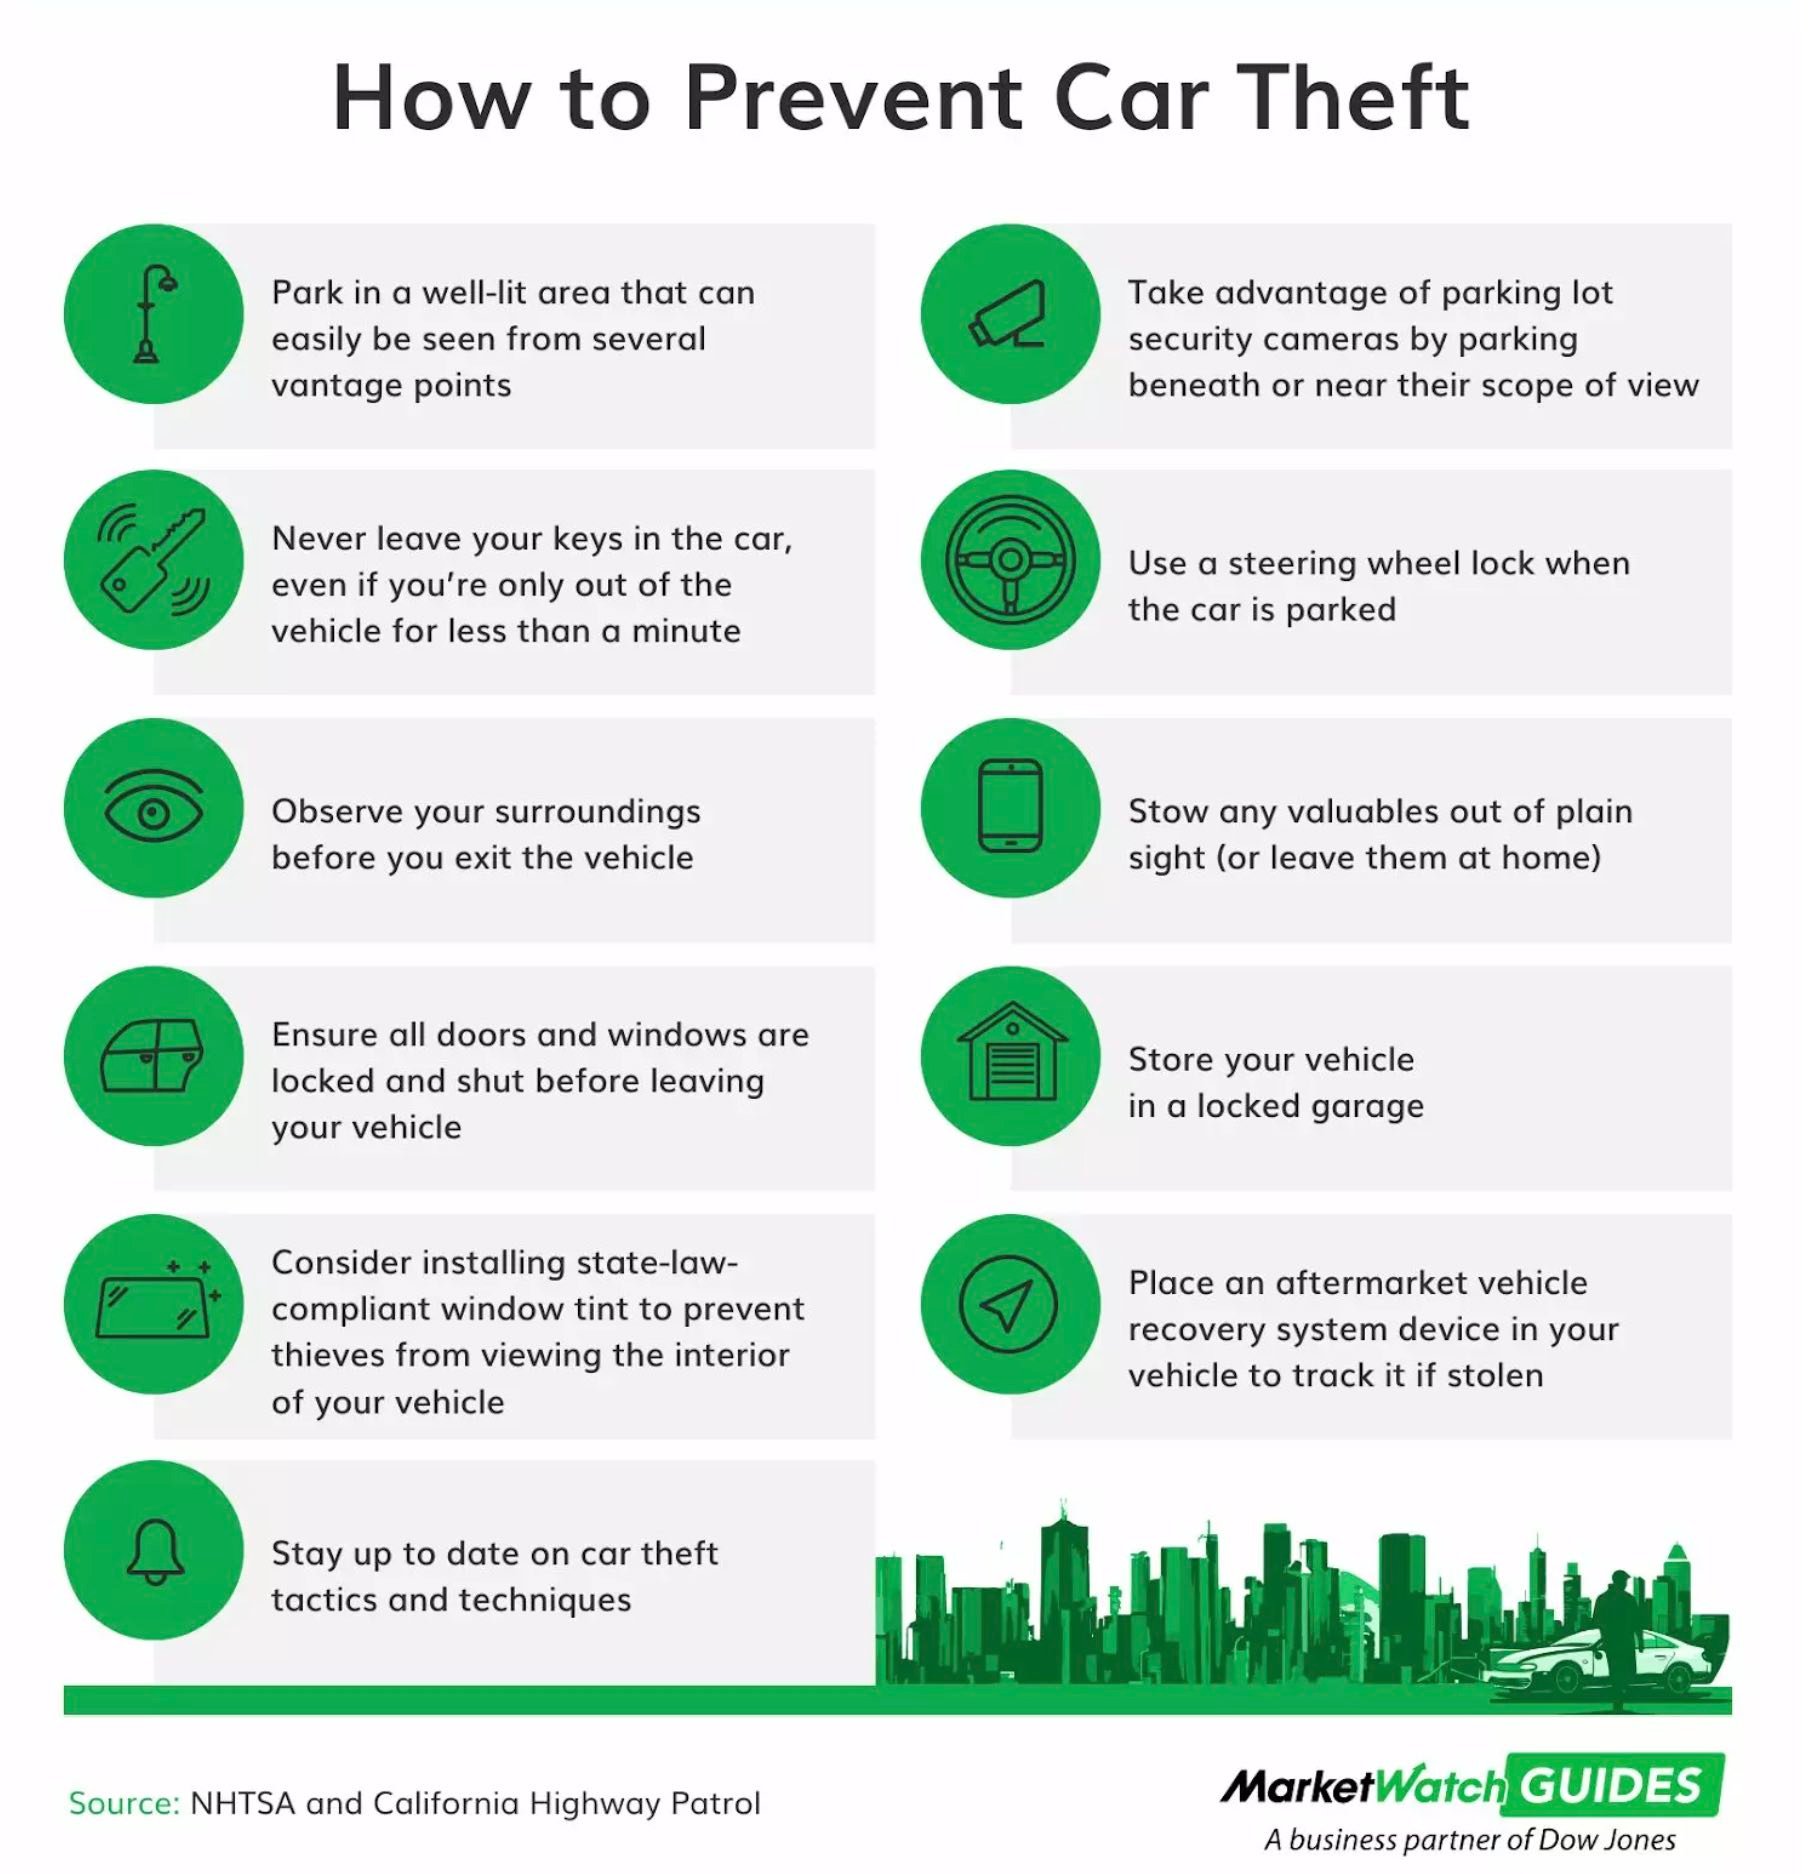 How To Prevent Car Theft infographic (MarketWatch.com)